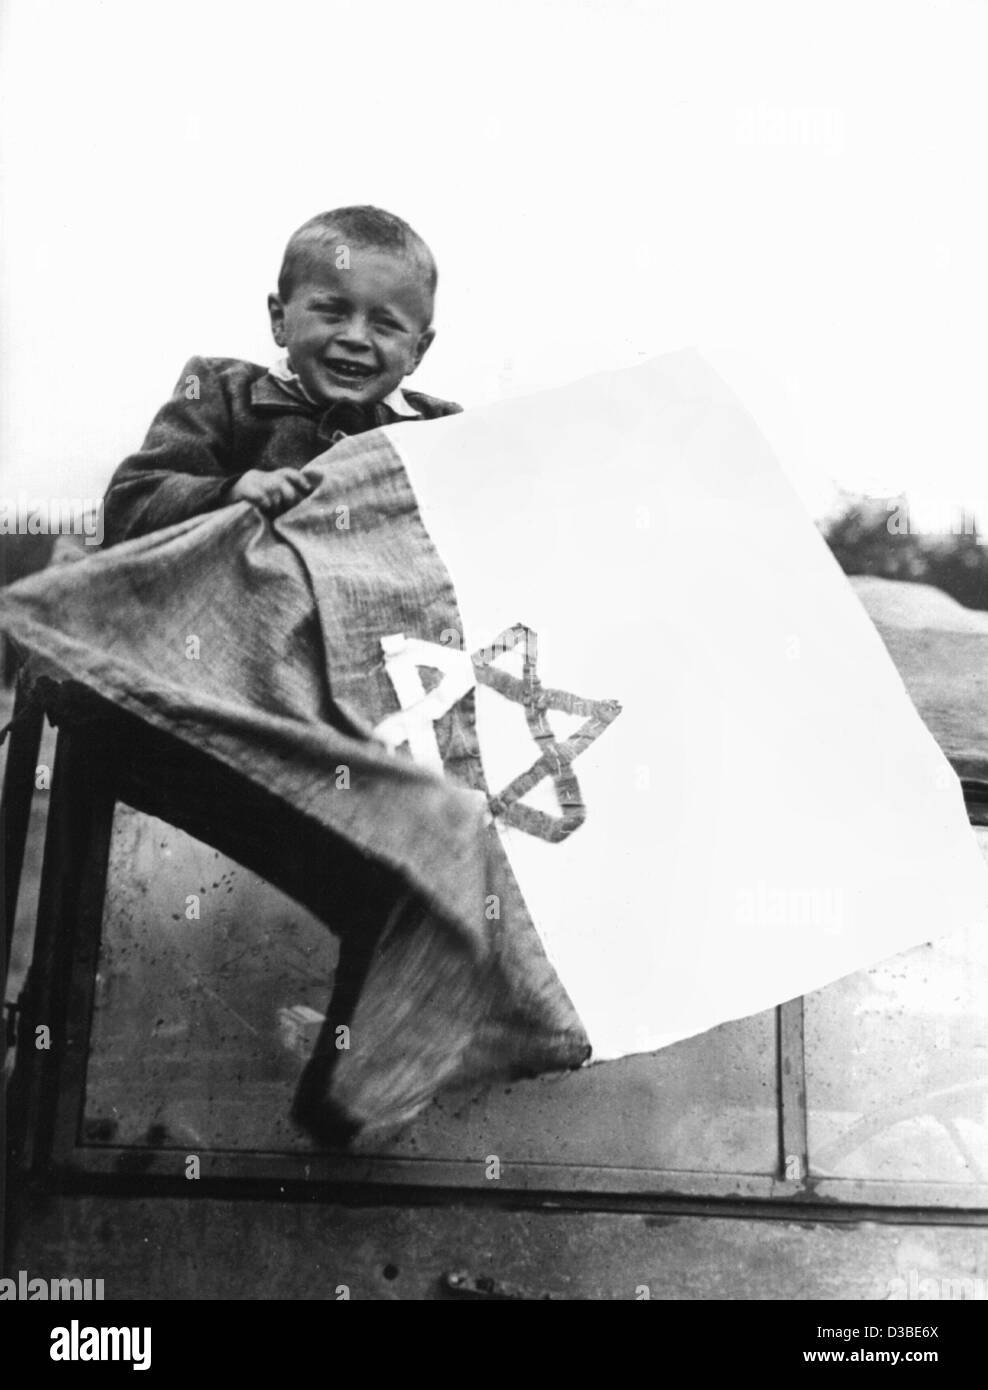 (Afp) - un petit garçon est titulaire d'un self-made drapeau avec l'étoile de David après la libération du camp de concentration de Buchenwald, Allemagne, avril 1945. Buchenwald a été l'un des plus grands camps de concentration en Allemagne nazie, créée en juillet 1937 à cinq milles au nord de Weimar. Banque D'Images